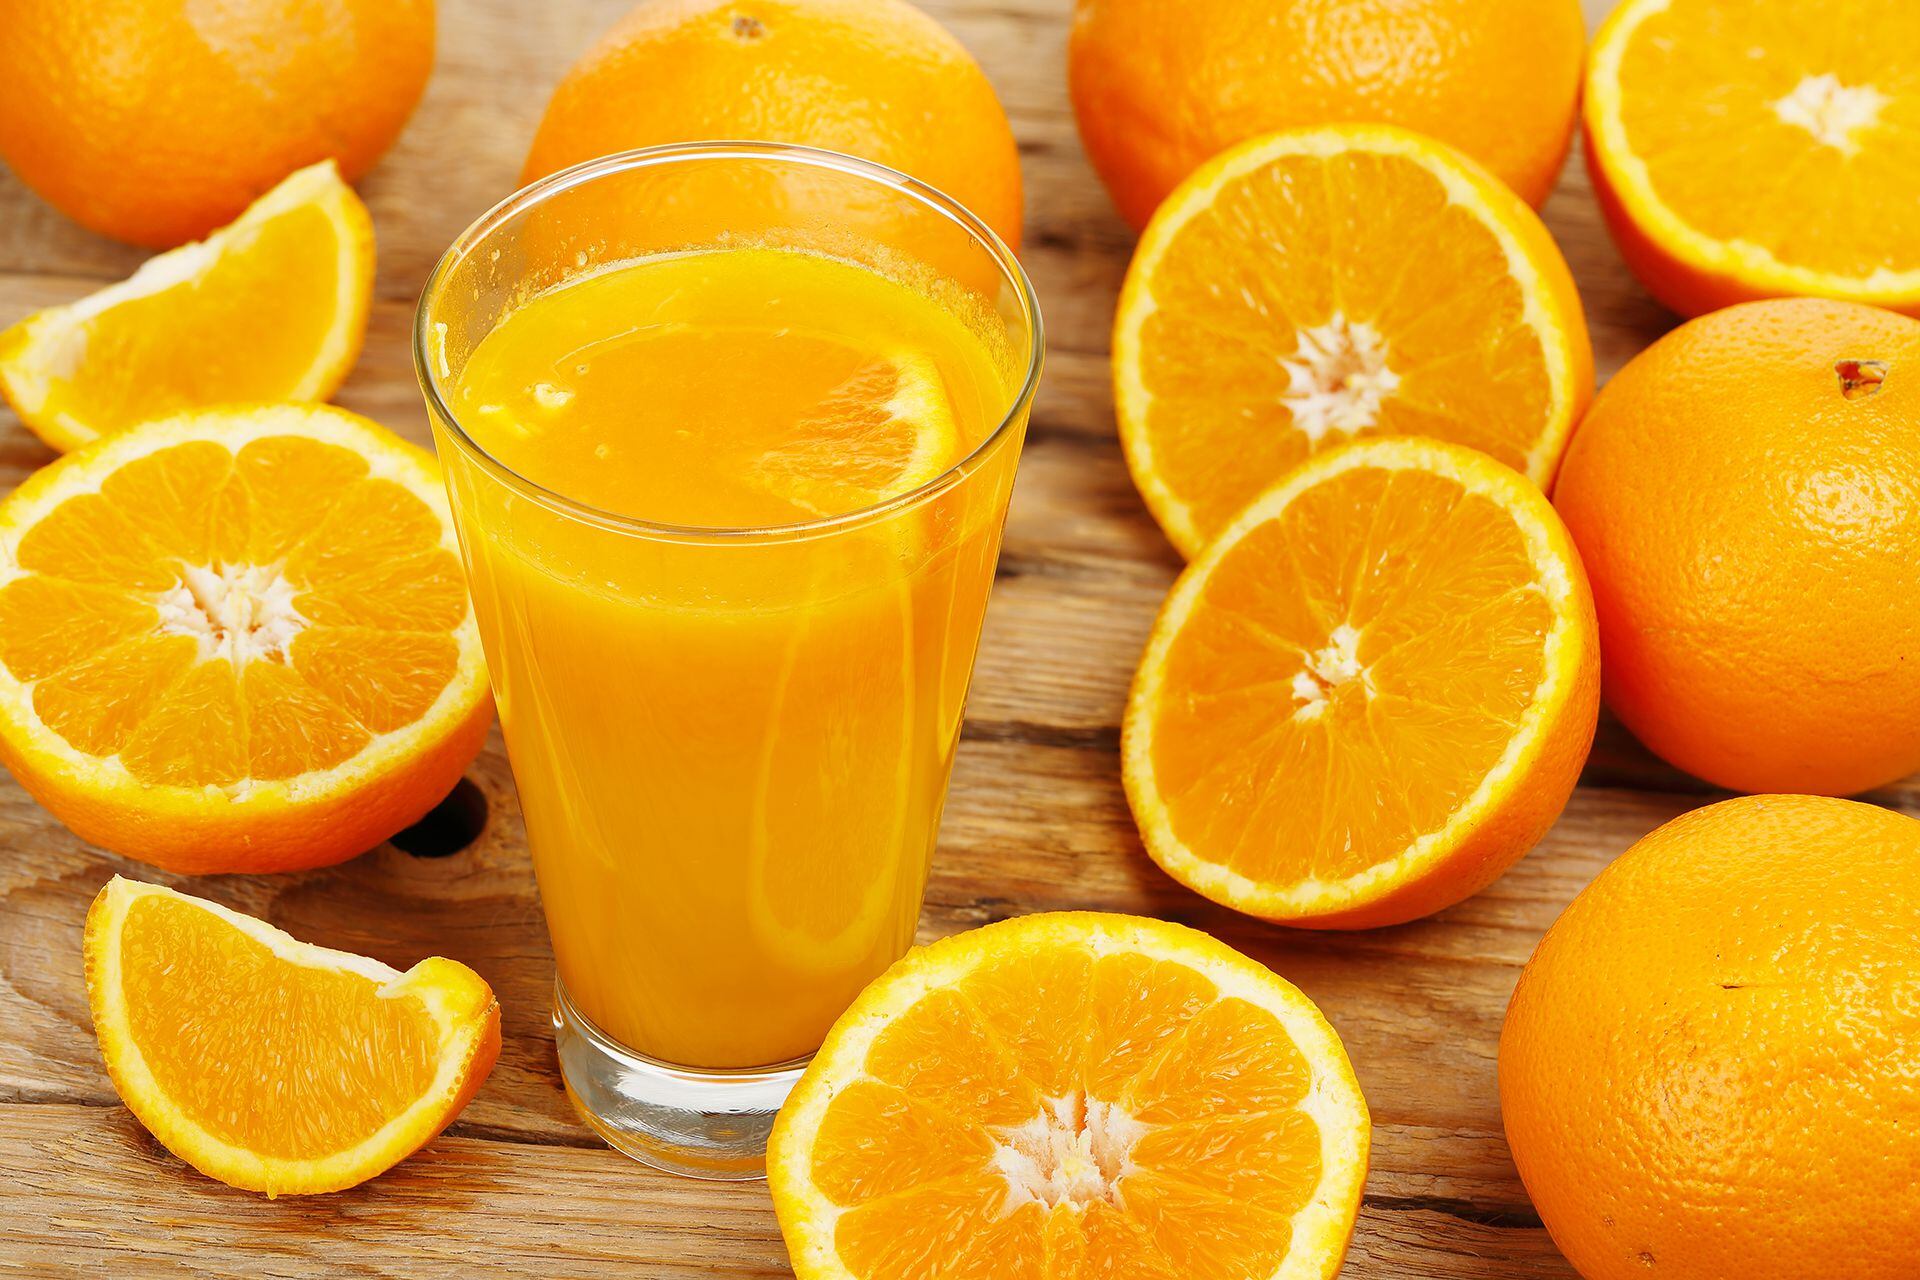 Beber jugo de naranja tiene efectos antioxidantes y es beneficioso para la salud cardiovascular y renal (Getty)